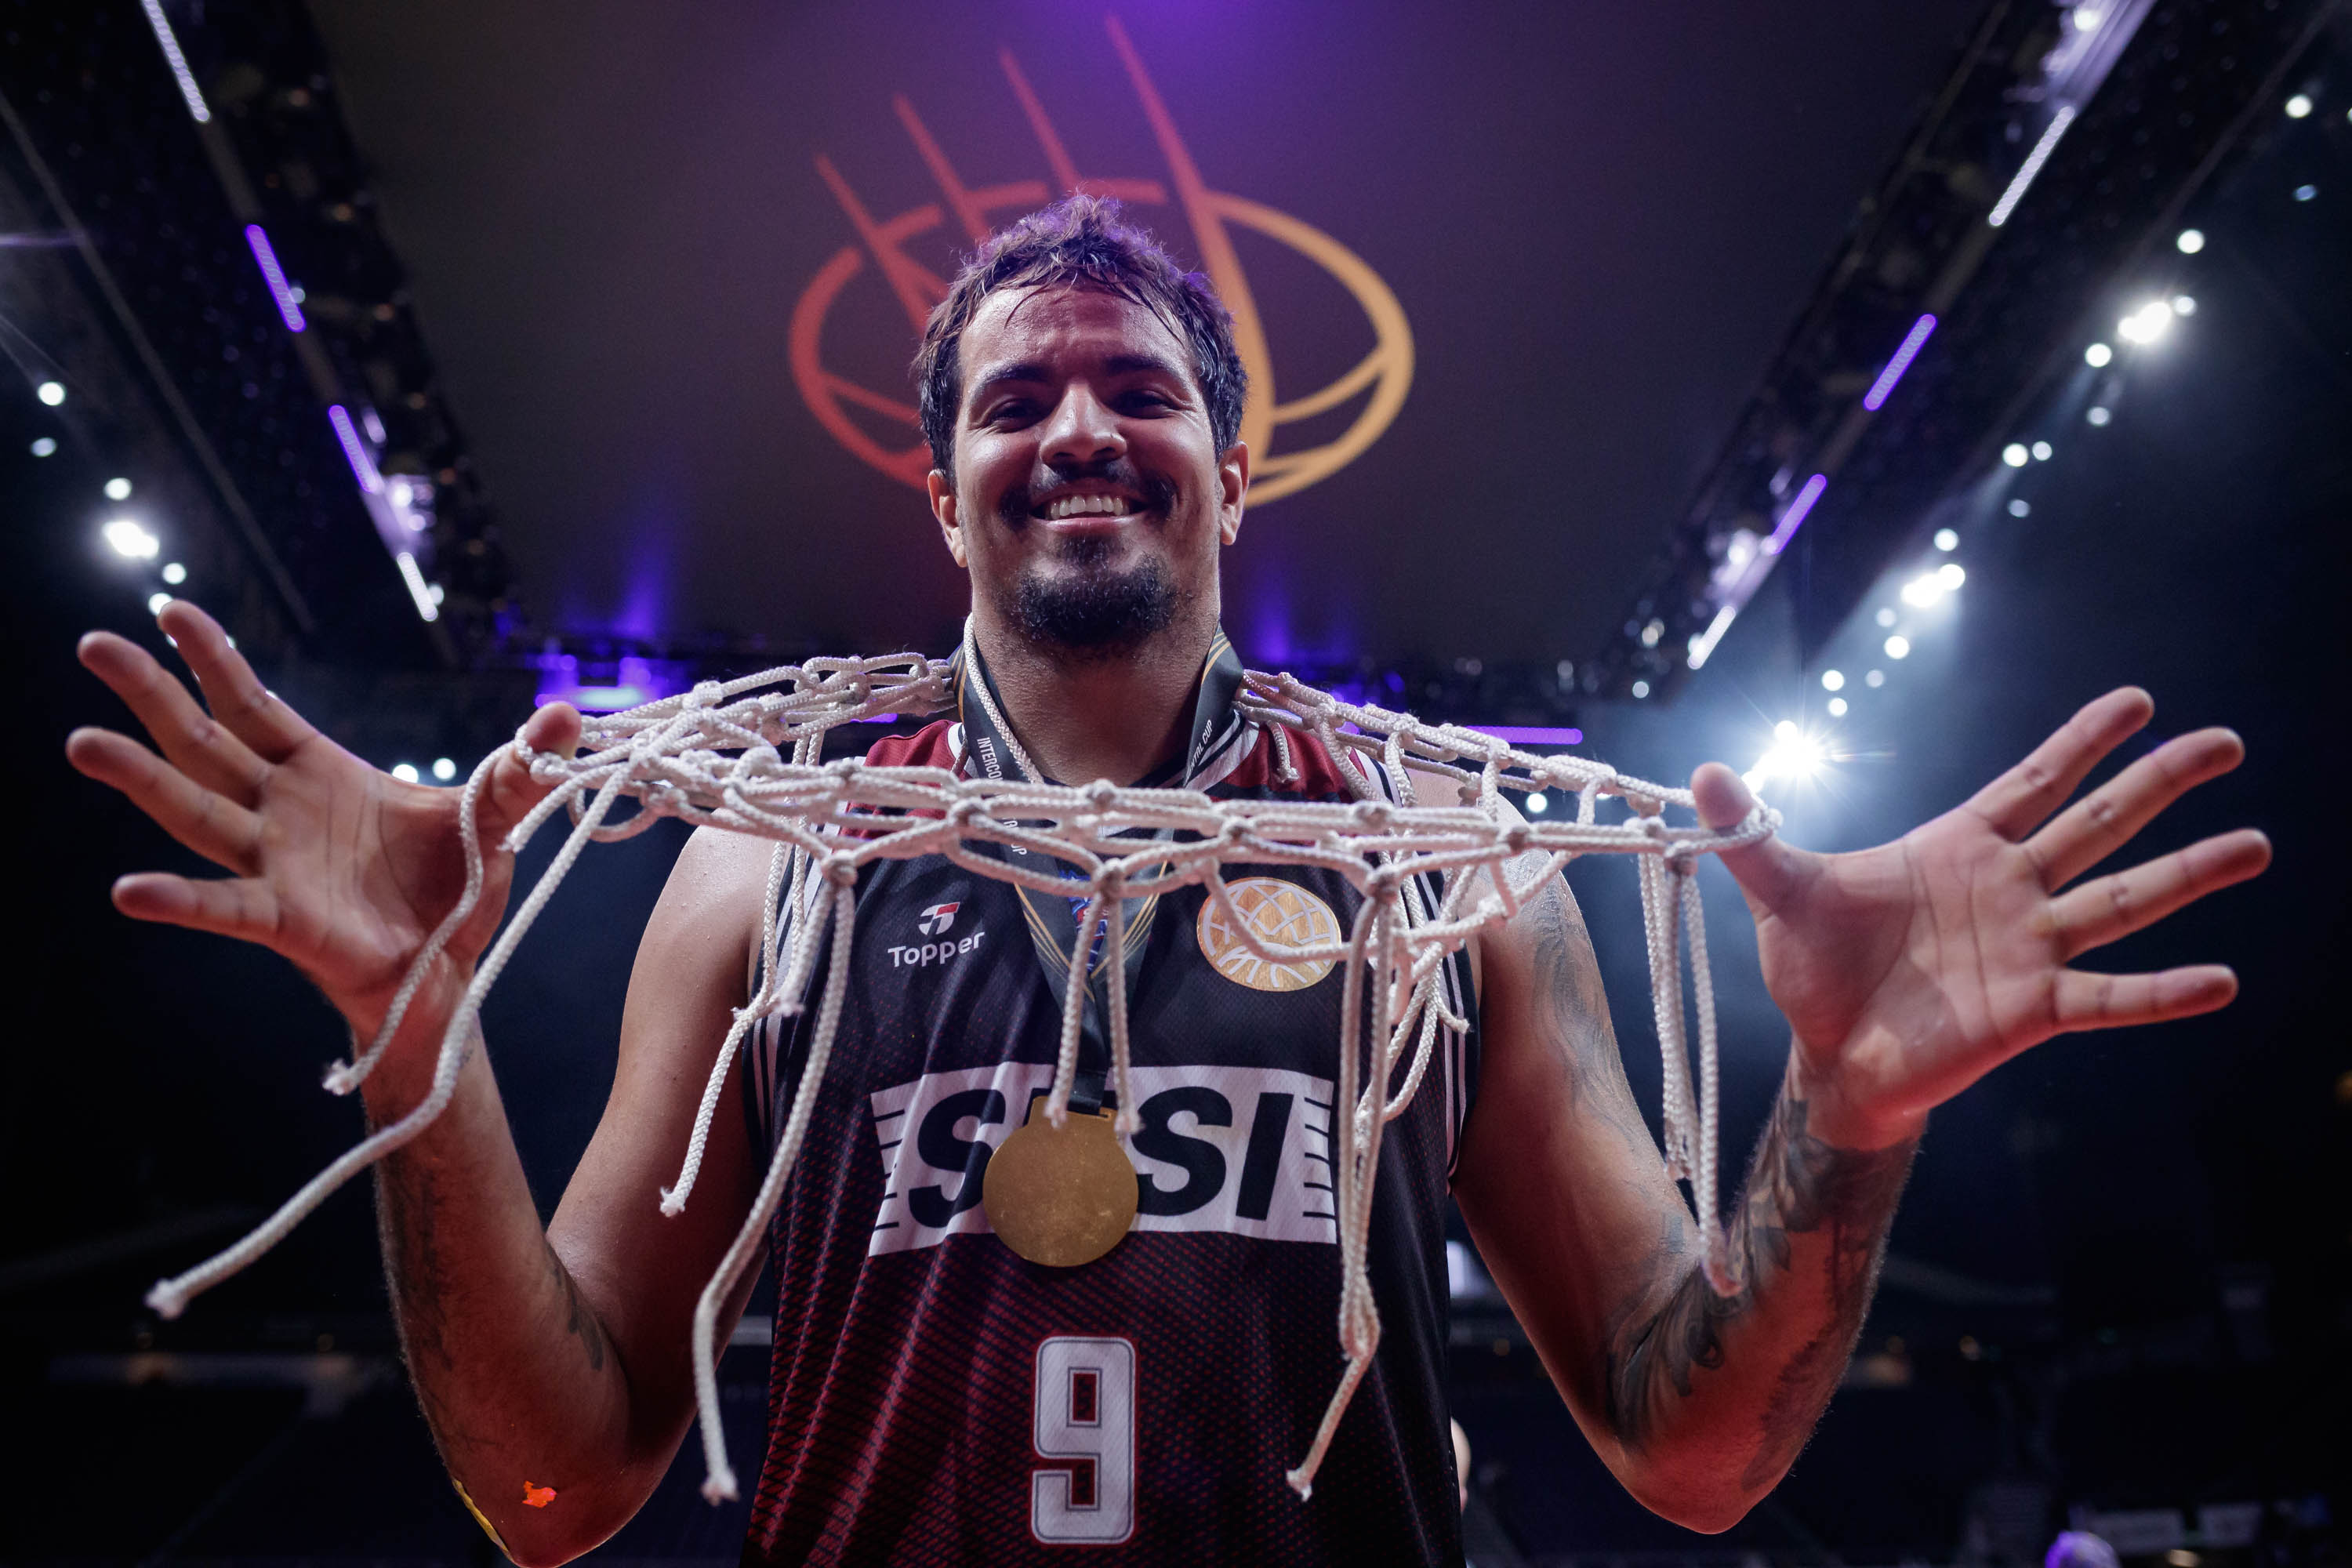 SESI Franca é campeão do Mundial de Clubes de basquete com cesta